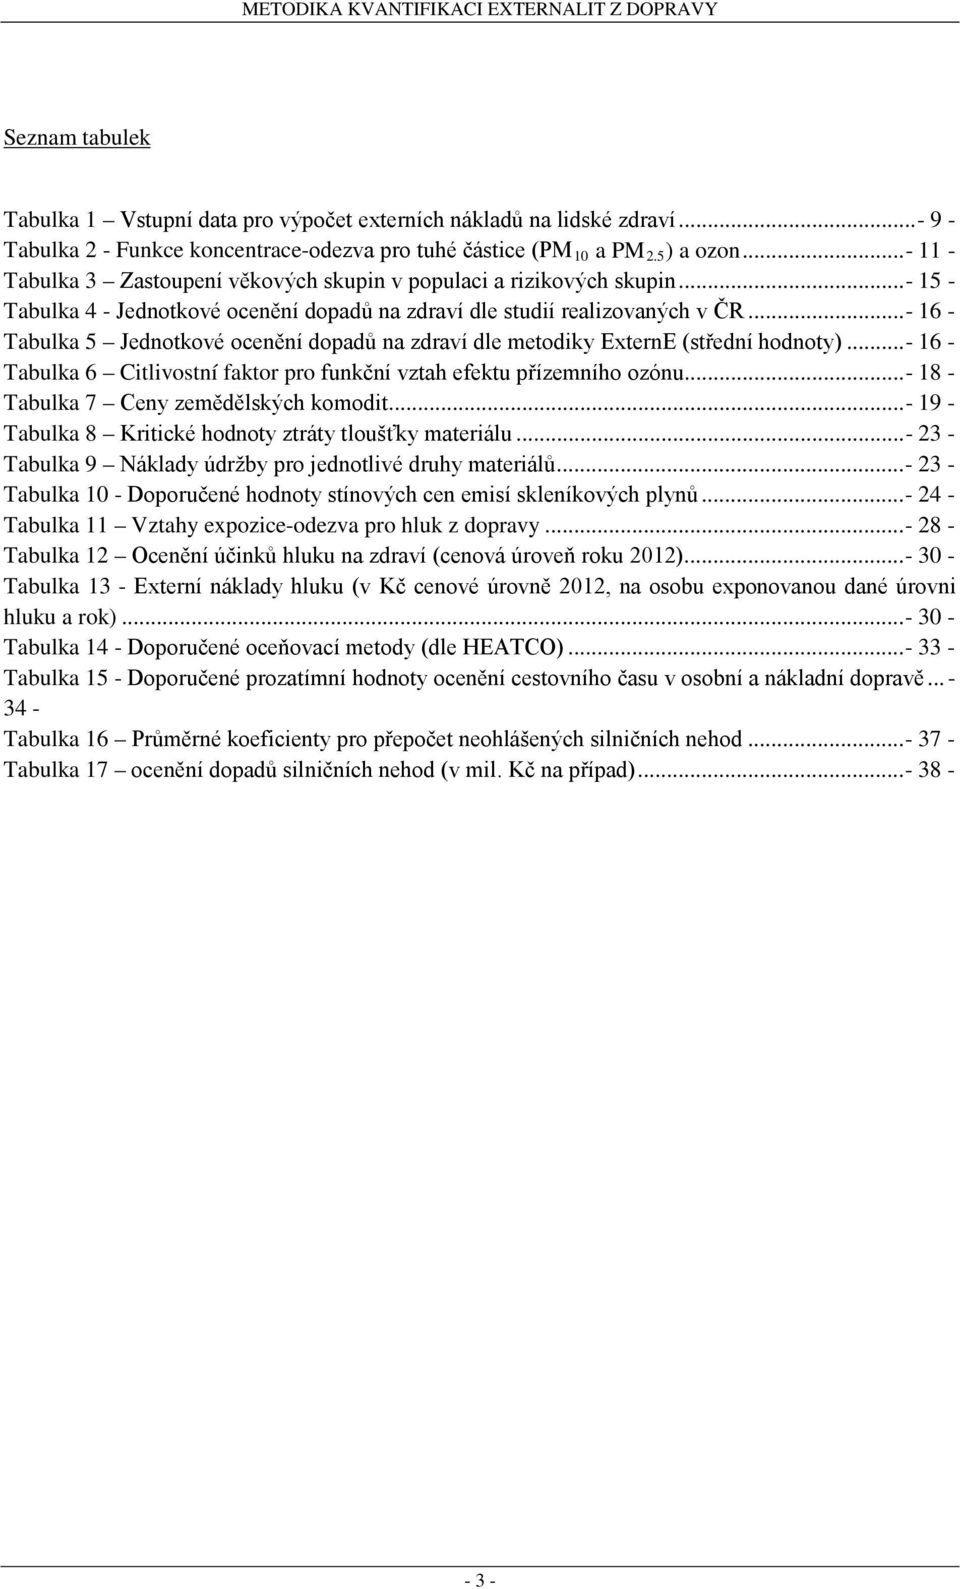 .. - 16 - Tabulka 5 Jednotkové ocenění dopadů na zdraví dle metodiky ExternE (střední hodnoty)... - 16 - Tabulka 6 Citlivostní faktor pro funkční vztah efektu přízemního ozónu.